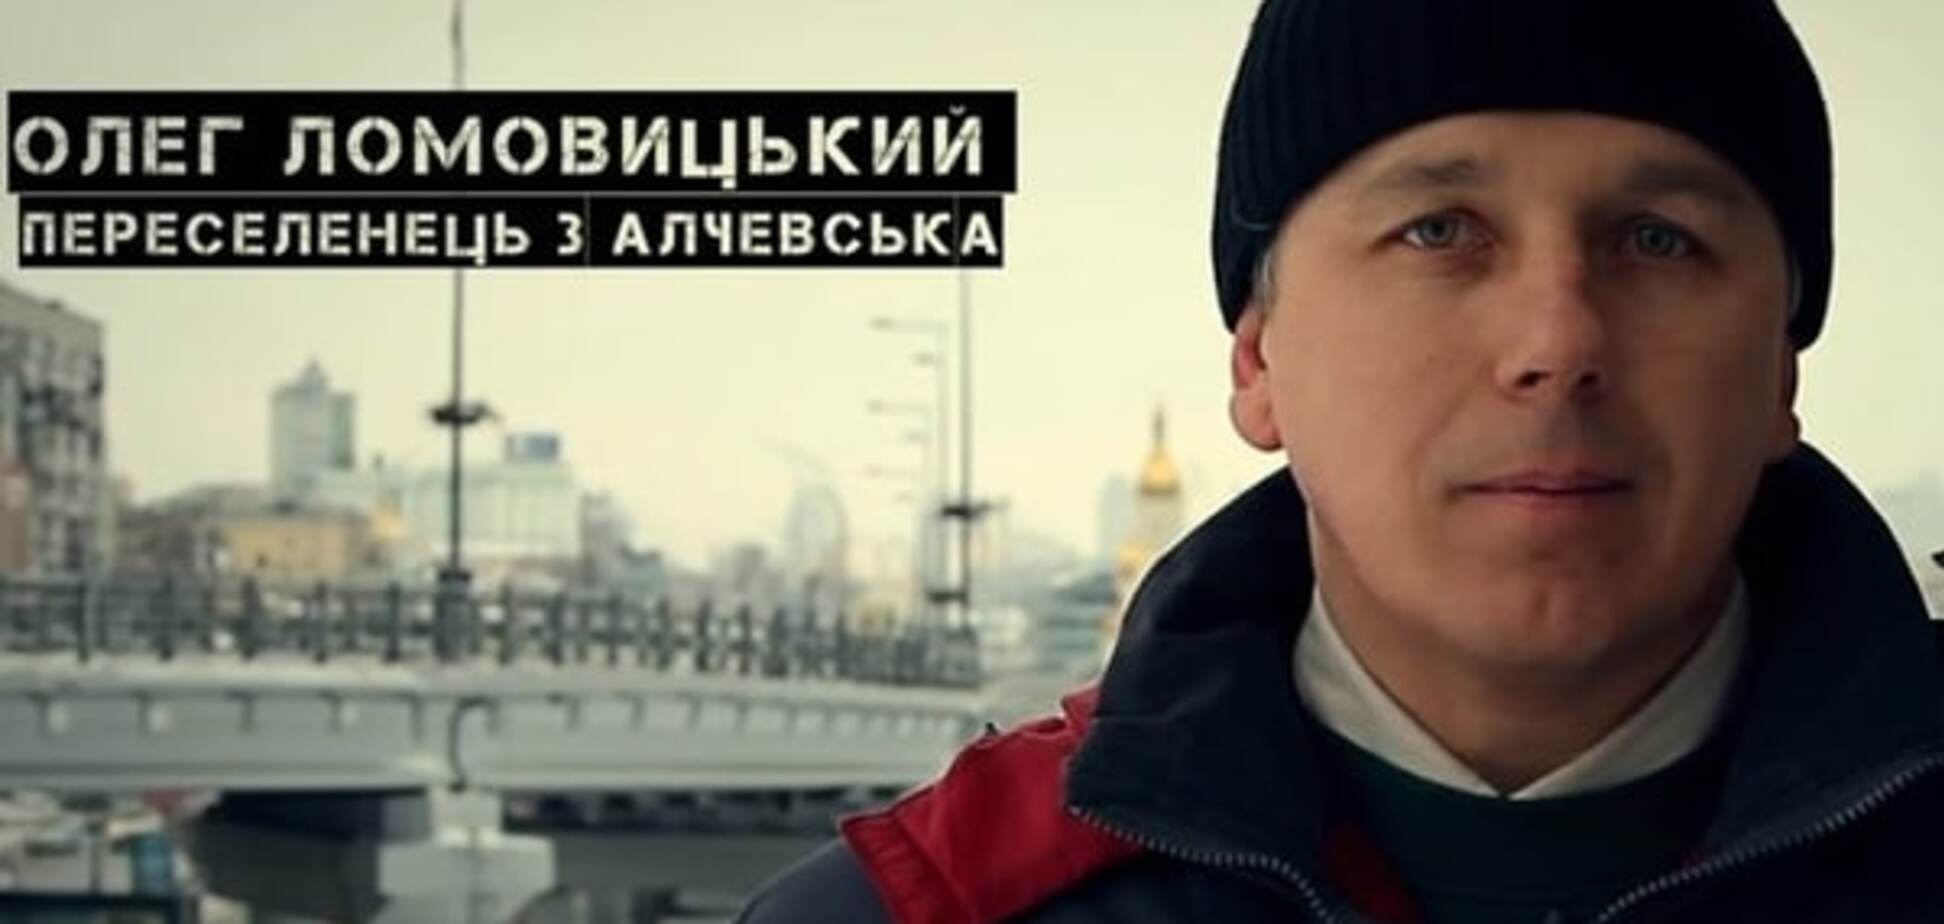 Соціальна реклама про біженців з Донбасу отримала нагороду від ООН: опубліковано відео